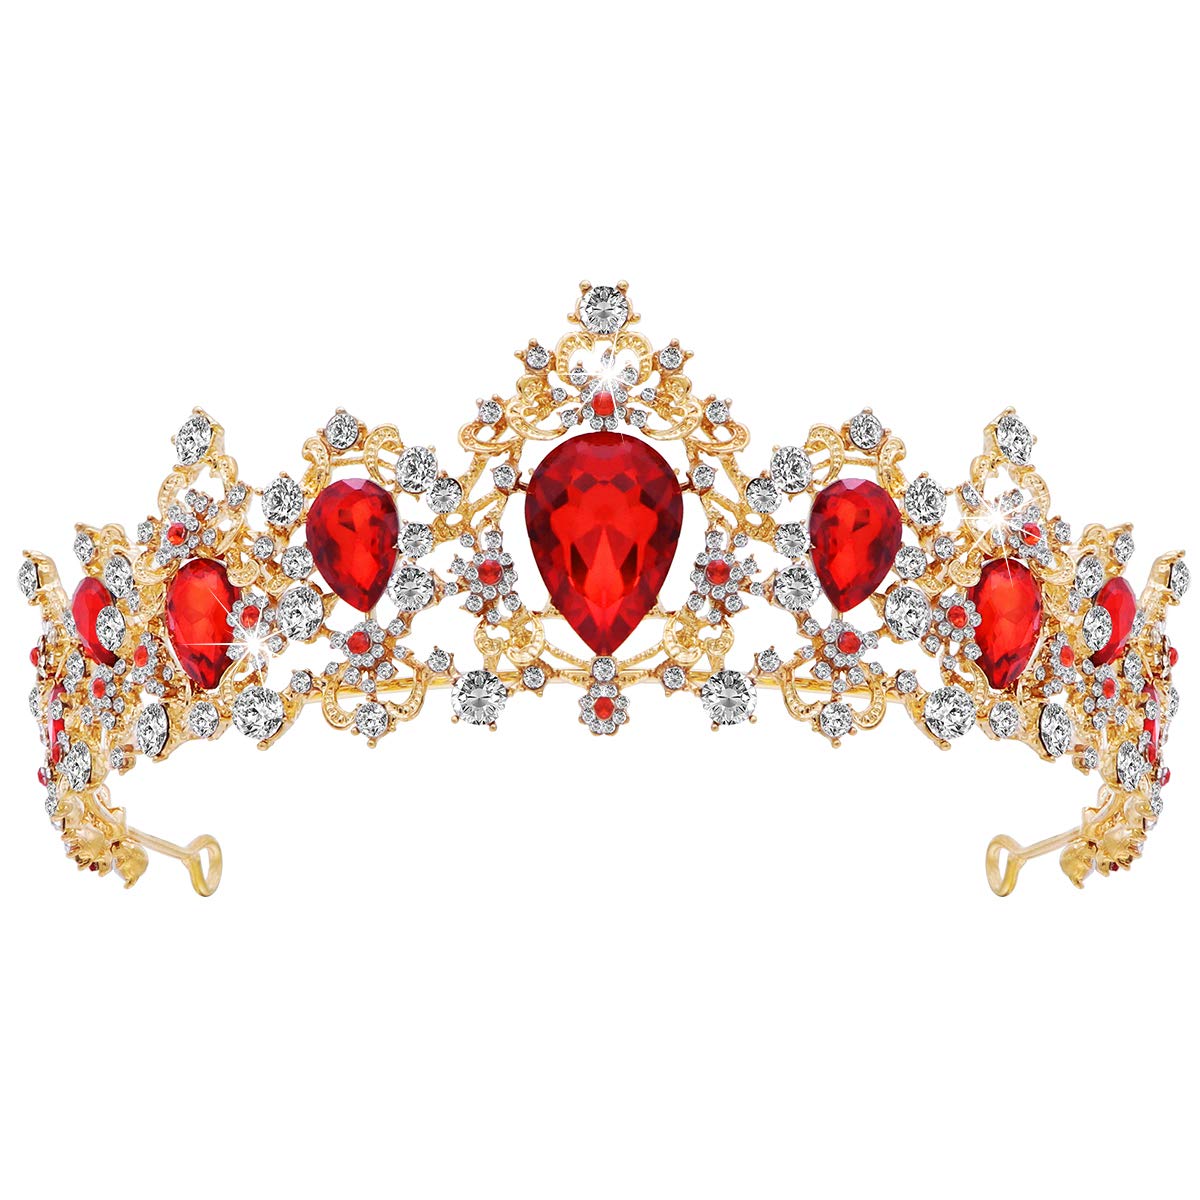 Frcolor Tiara Krone für Frauen, Strass Queen Crowns Hochzeit Tiaras Kronen Stirnband (rot)